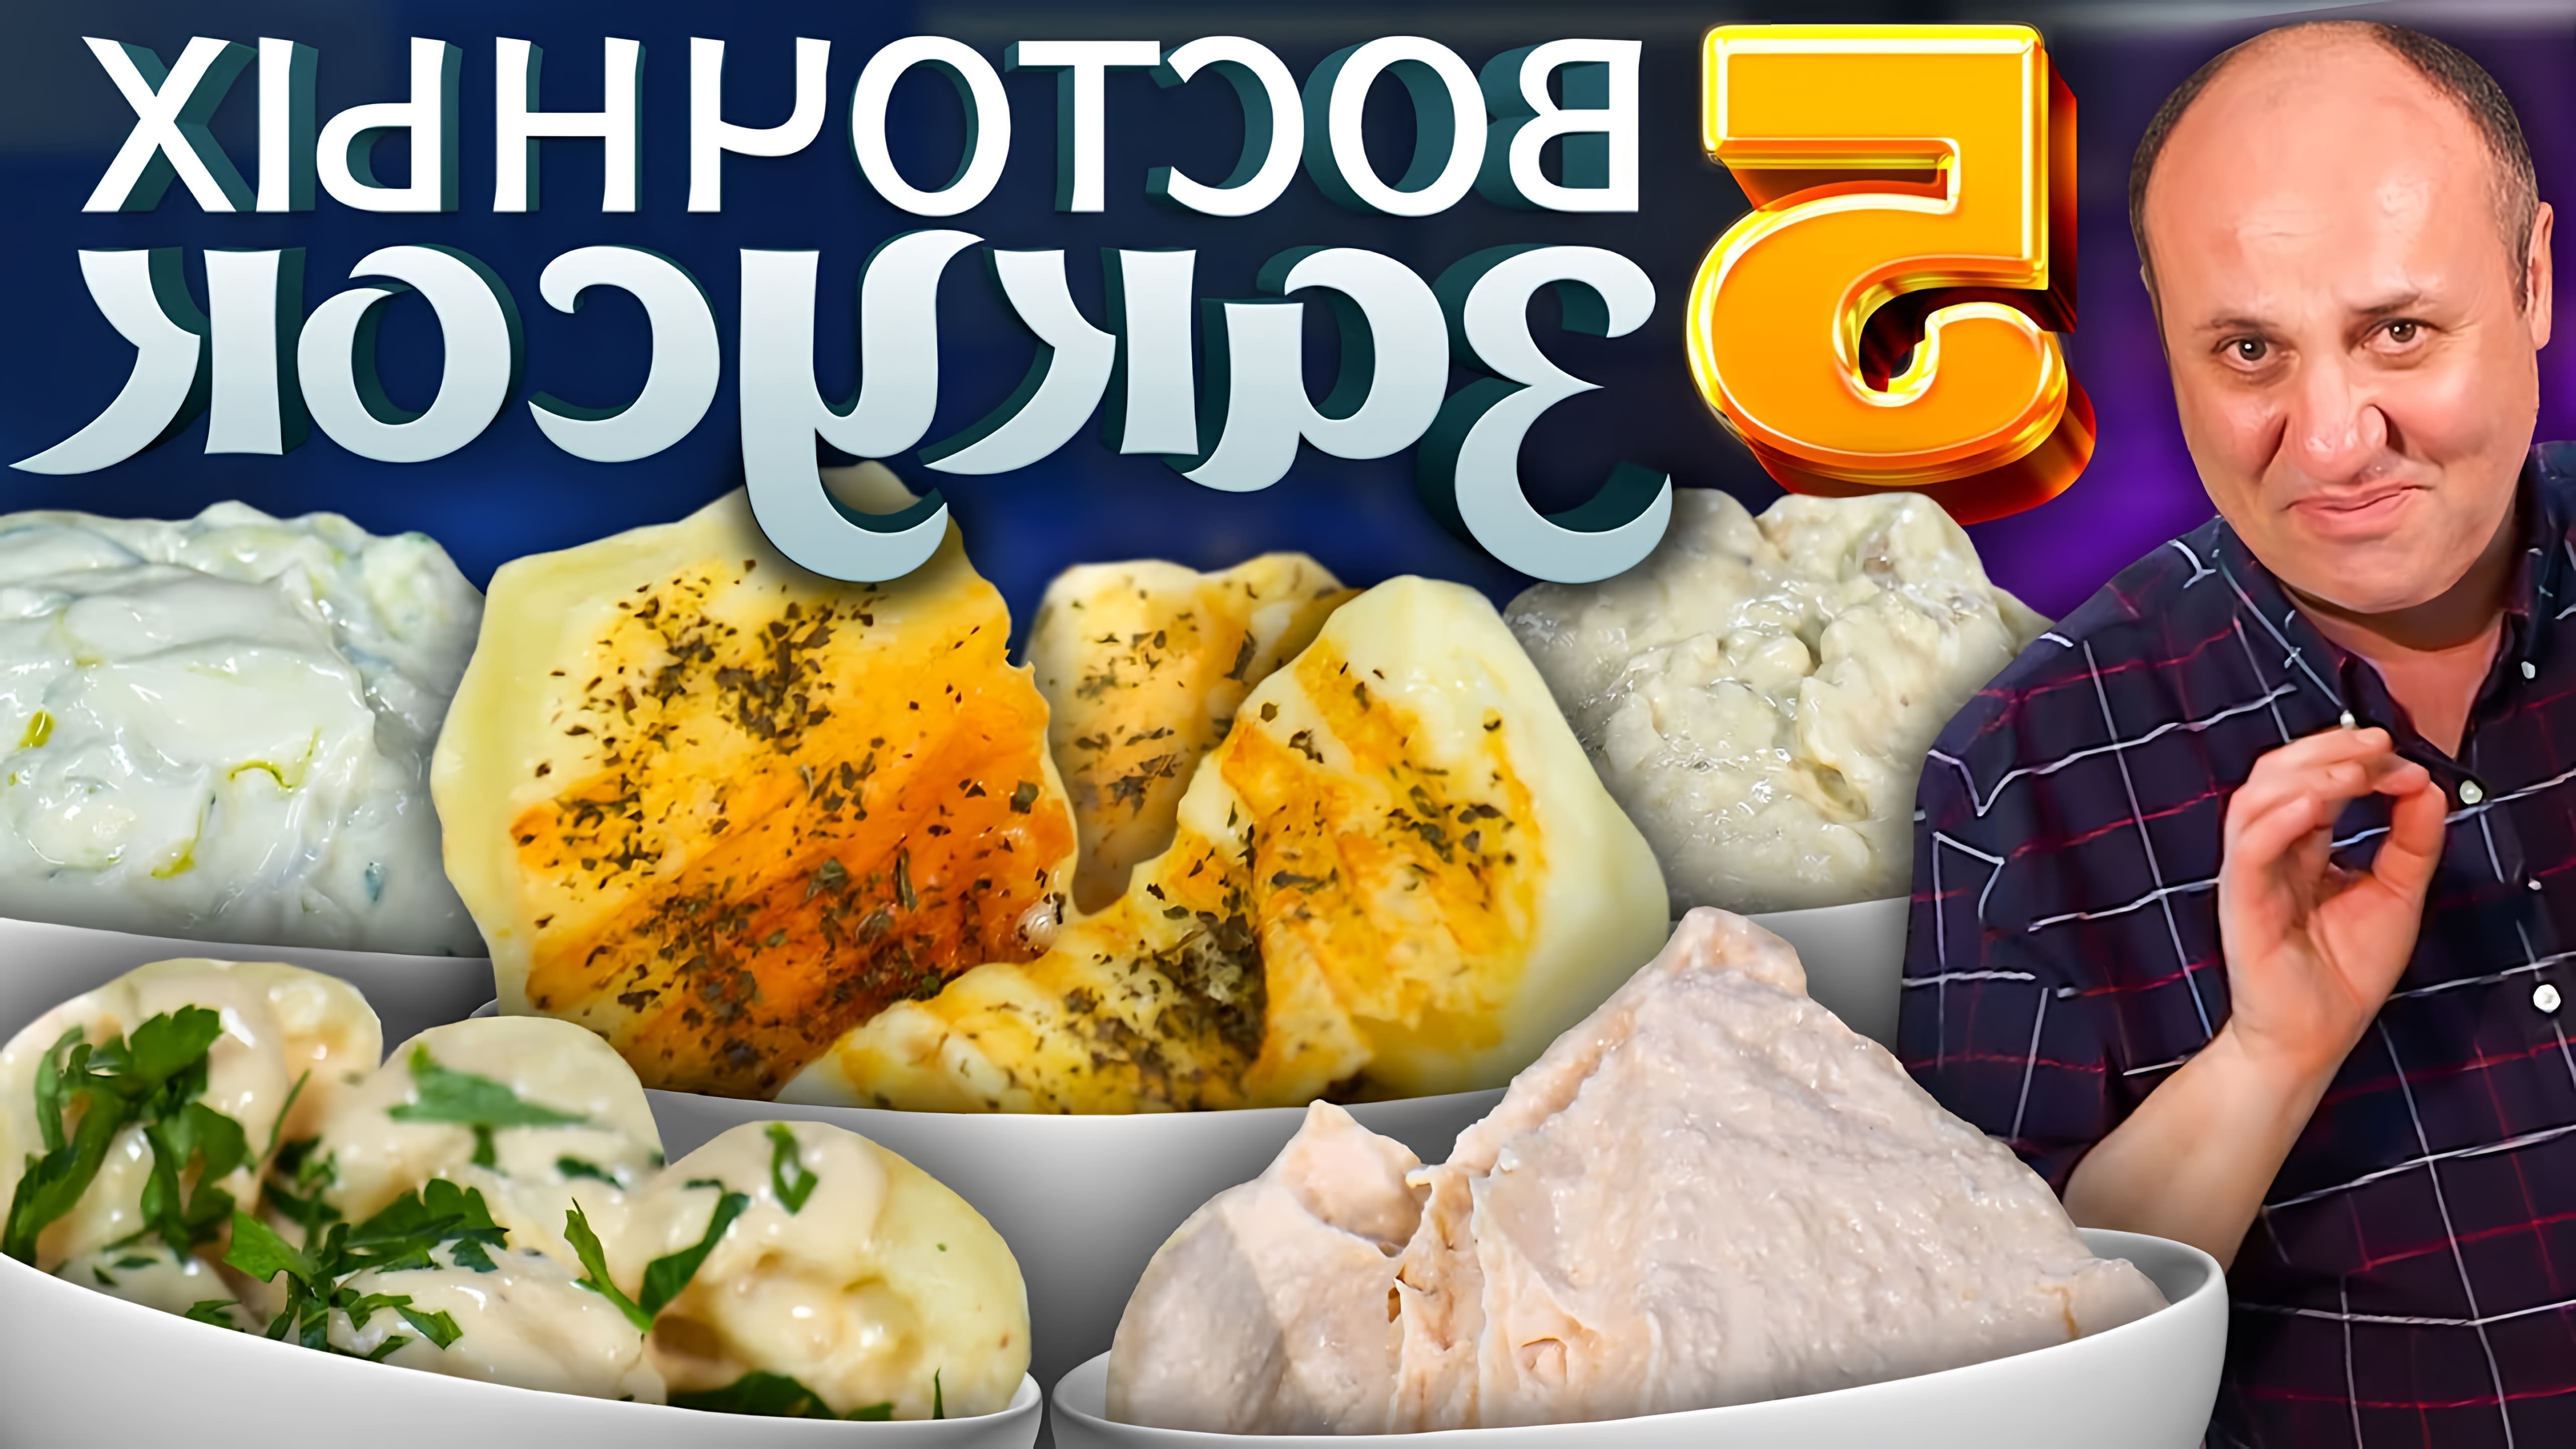 В этом видео Илья Лазерсон готовит 5 закусок для мезе - традиционной серии маленьких закусок, которые подаются перед основным блюдом в Греции, на Кипре, в Израиле и других восточных странах